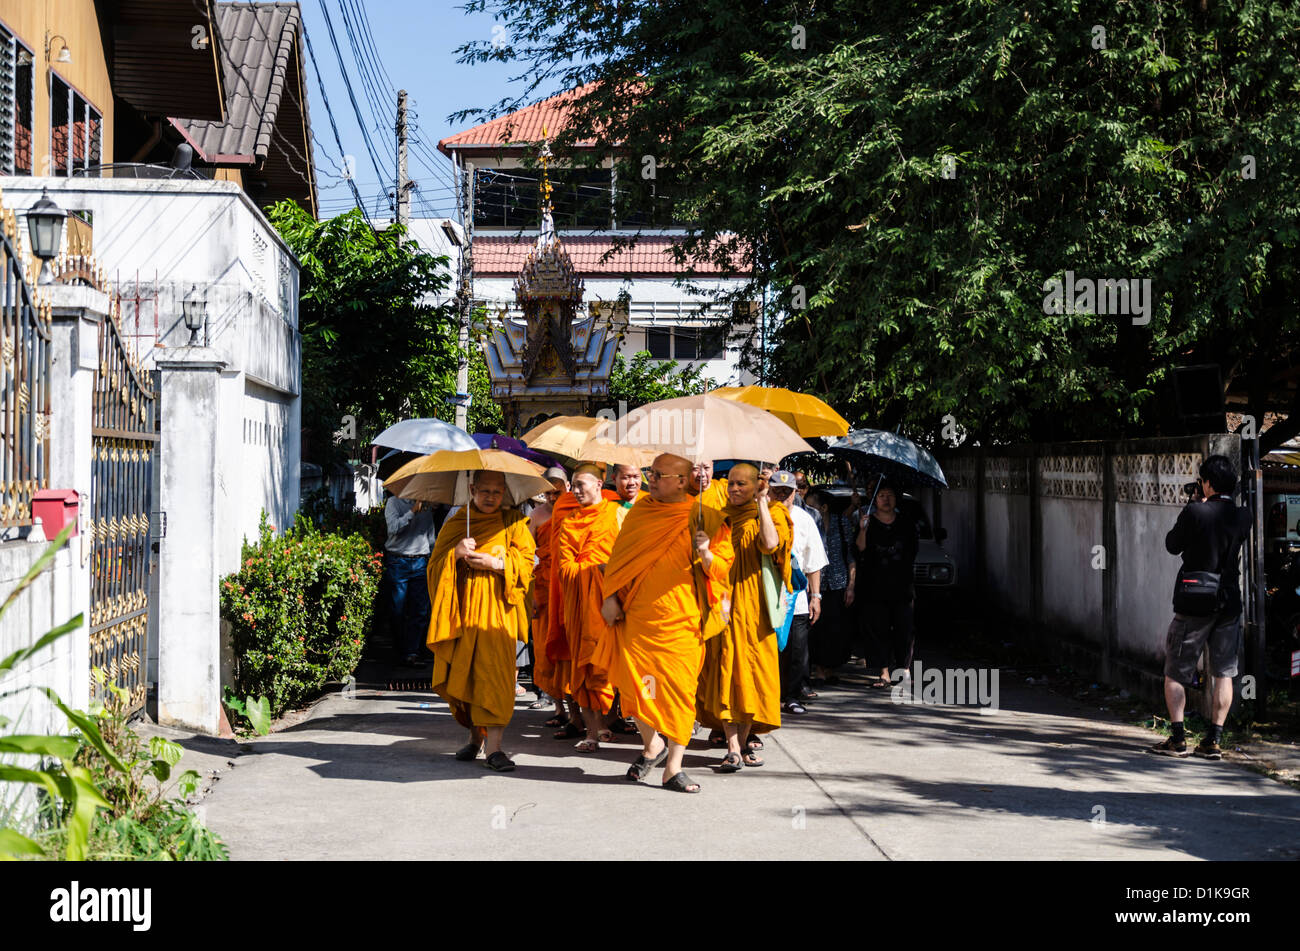 Les moines portant des robes orange vif et transportant des parapluies pour conduire l'ombre du cortège funéraire avec grand flotteur sur street Banque D'Images